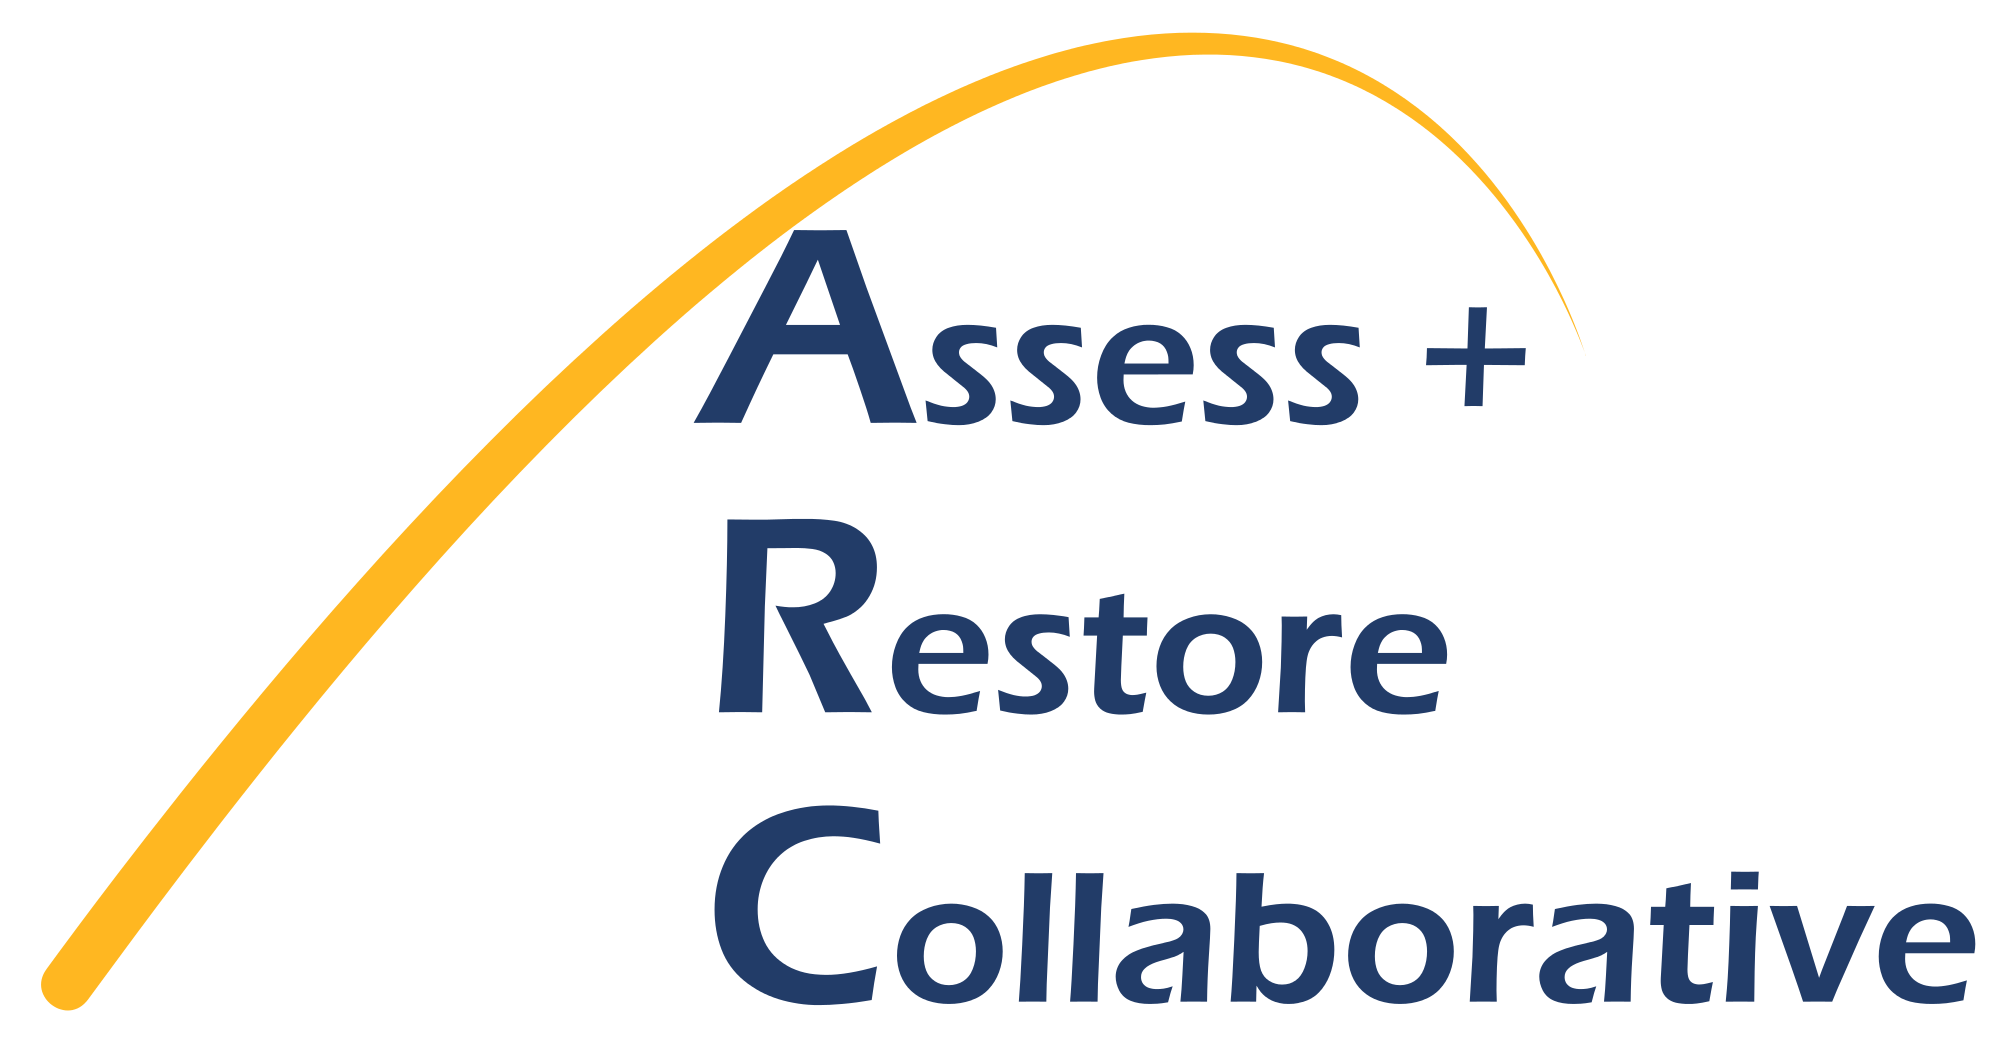 Assess + Restore Collaborative